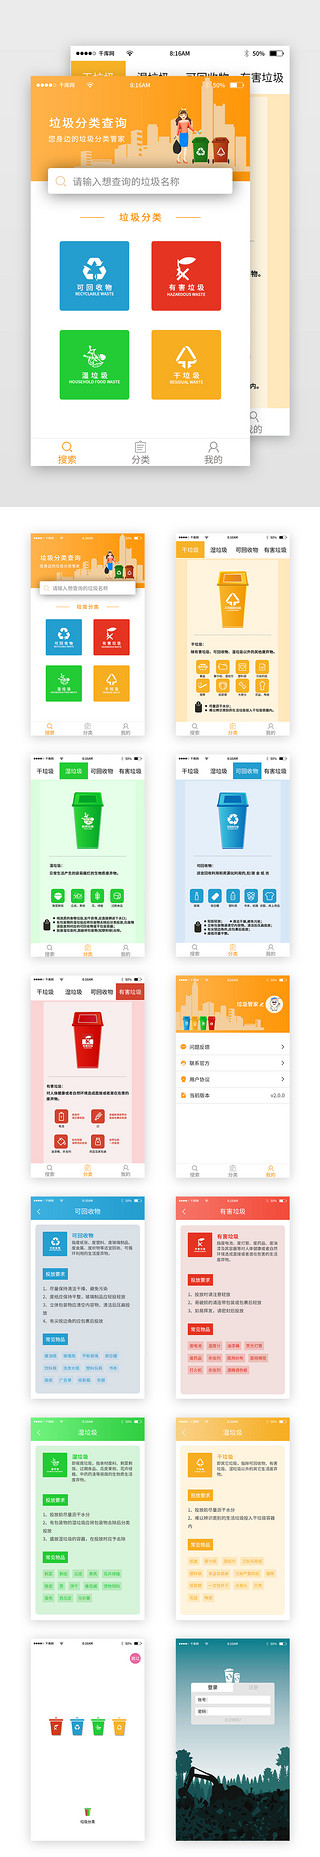 勿乱扔垃圾UI设计素材_彩色简约垃圾分类app套图